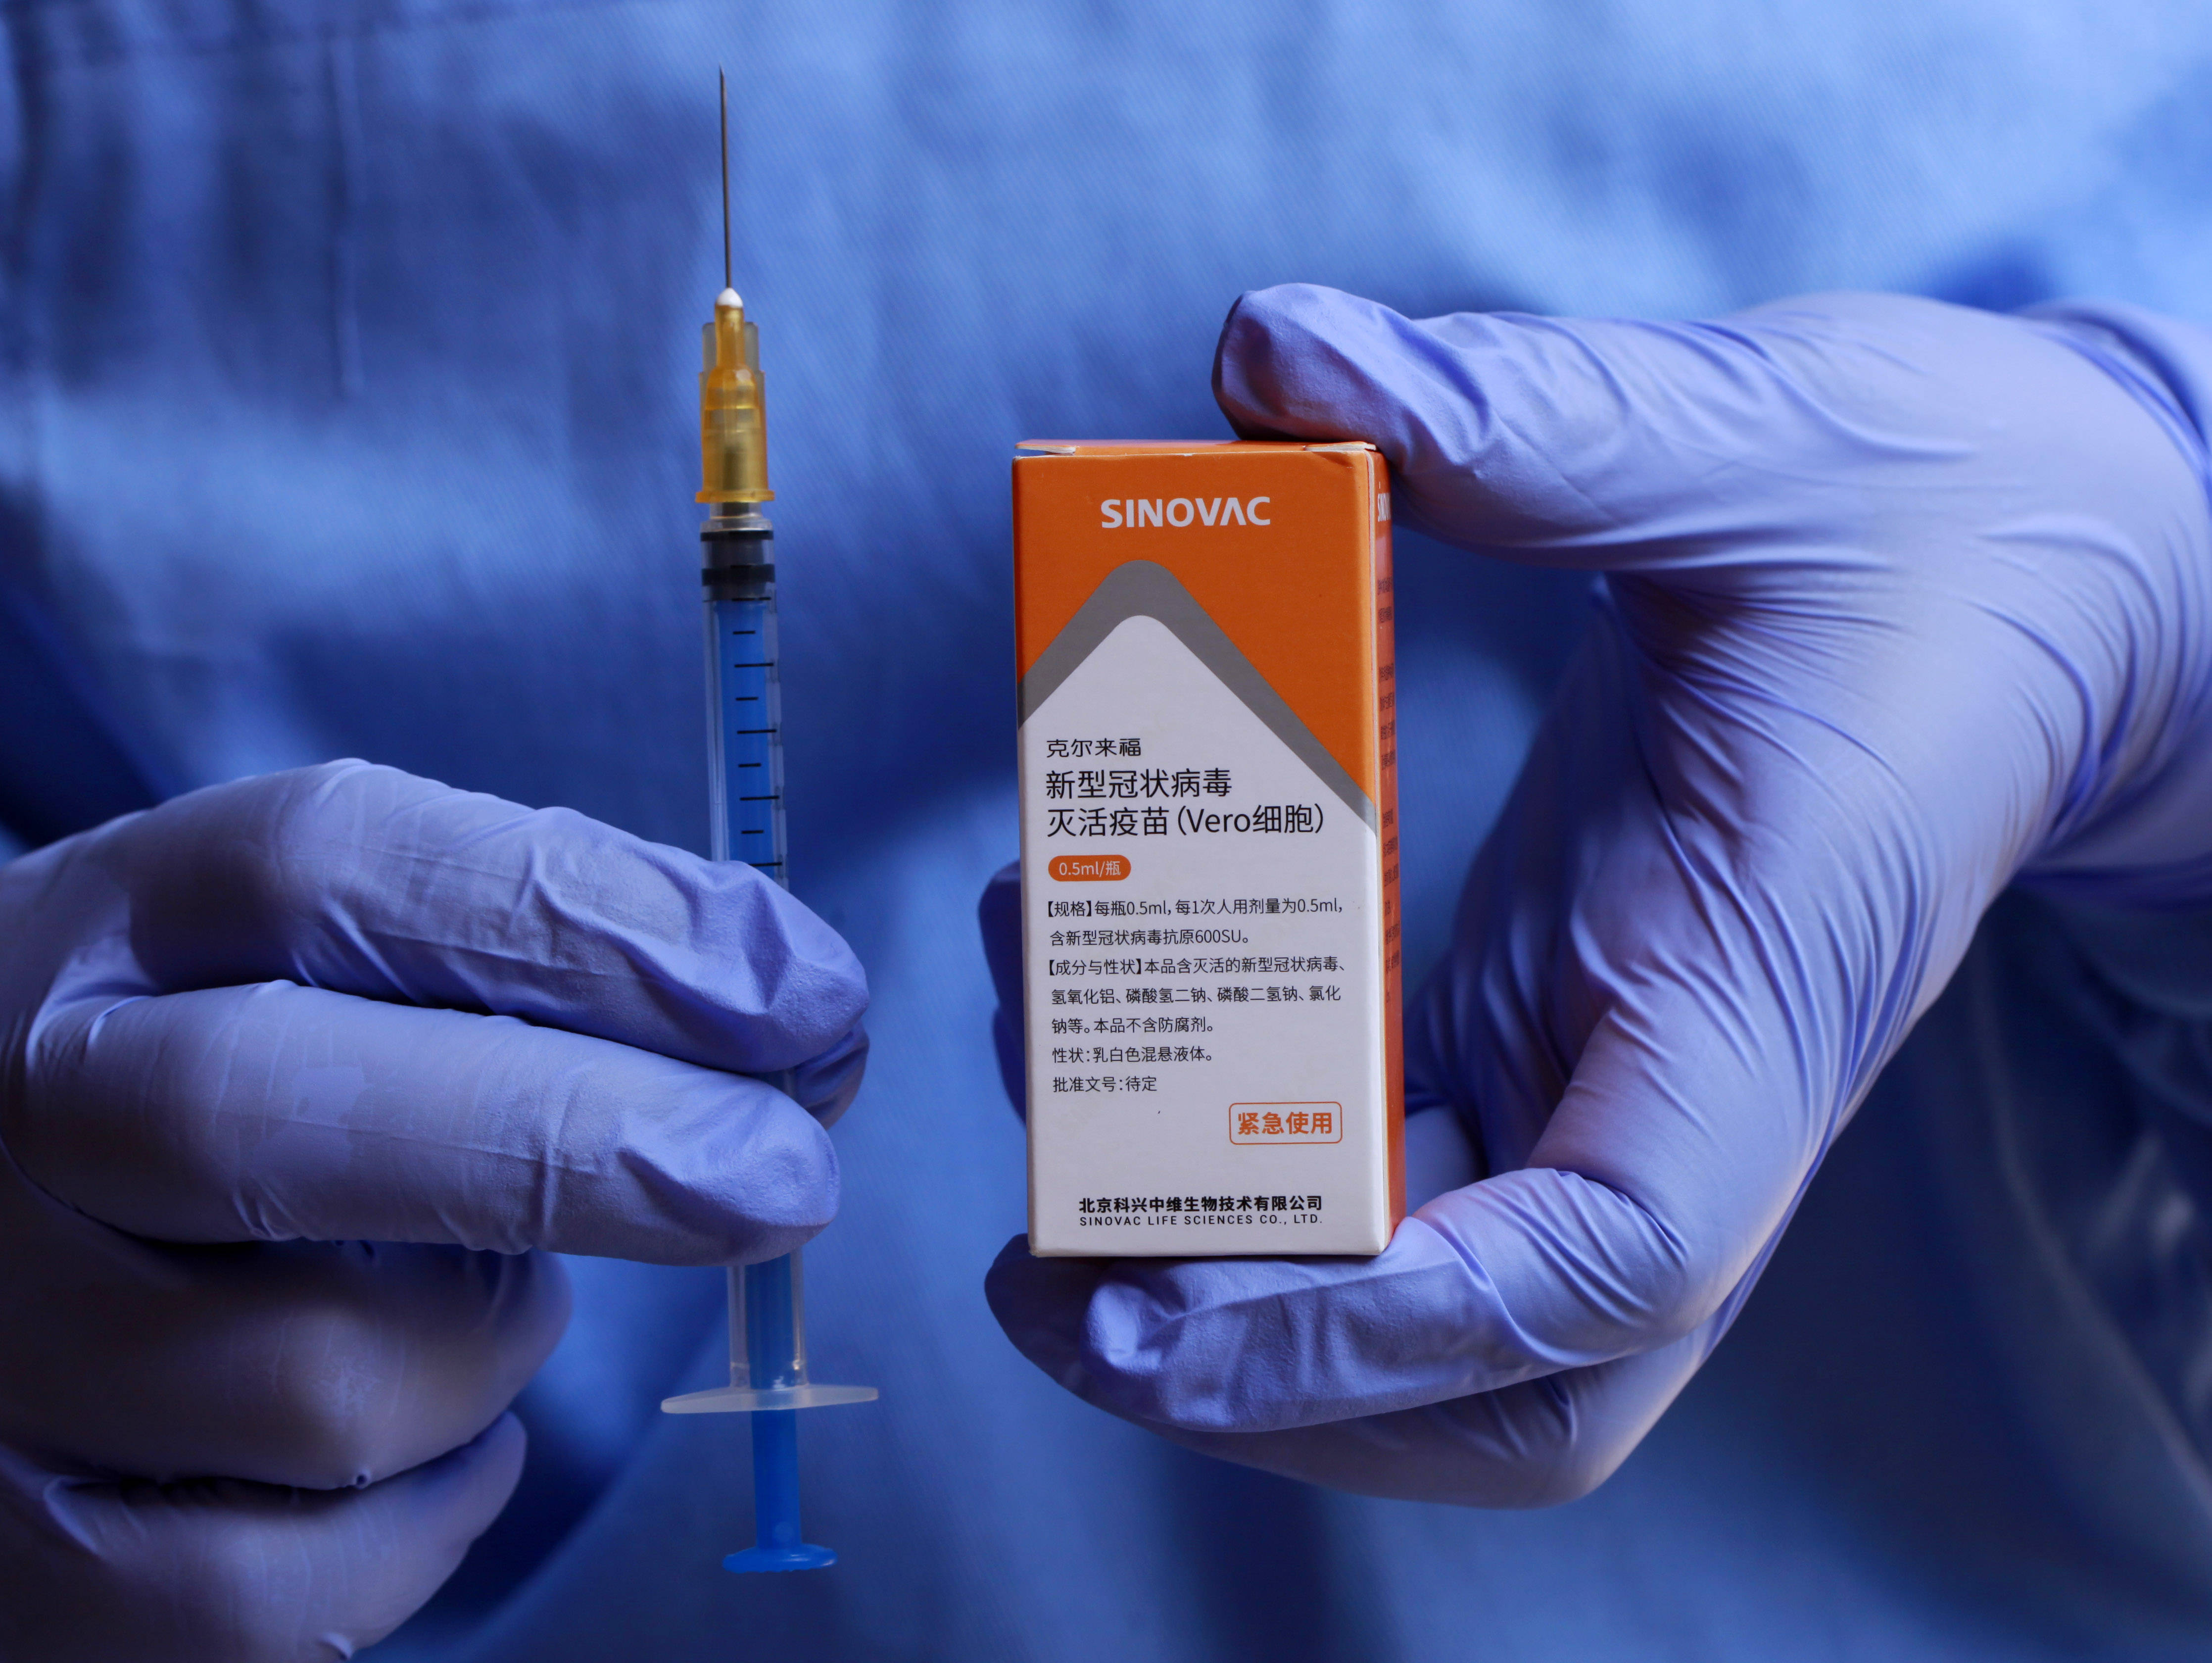 斯里兰卡批准中国科兴新冠疫苗紧急使用